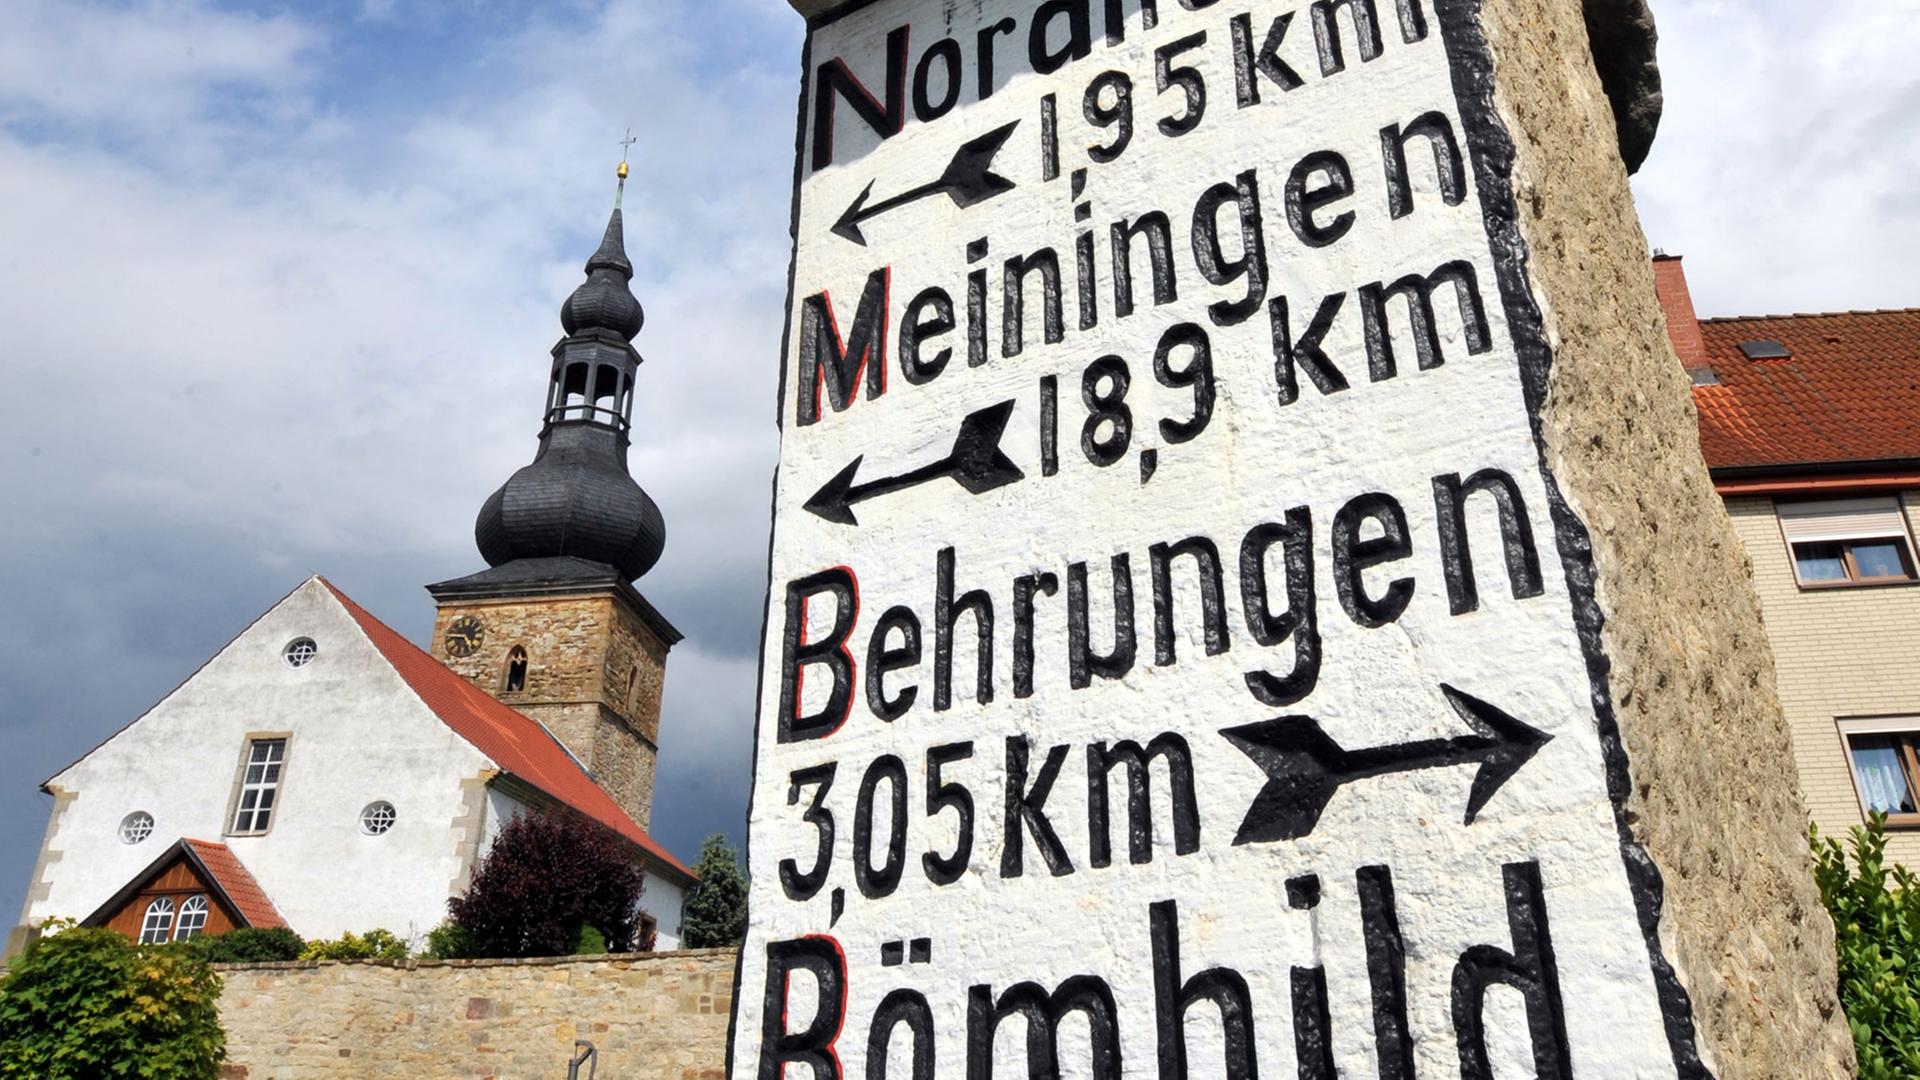 Ein historischer Wegweiser von 1912 zeigt im südthüringischen Berkach in der Rhön Richtung und Entfernung nach Nordheim, Meiningen, Behrungen und Römhild an, aufgenommen am 10.06.2009.